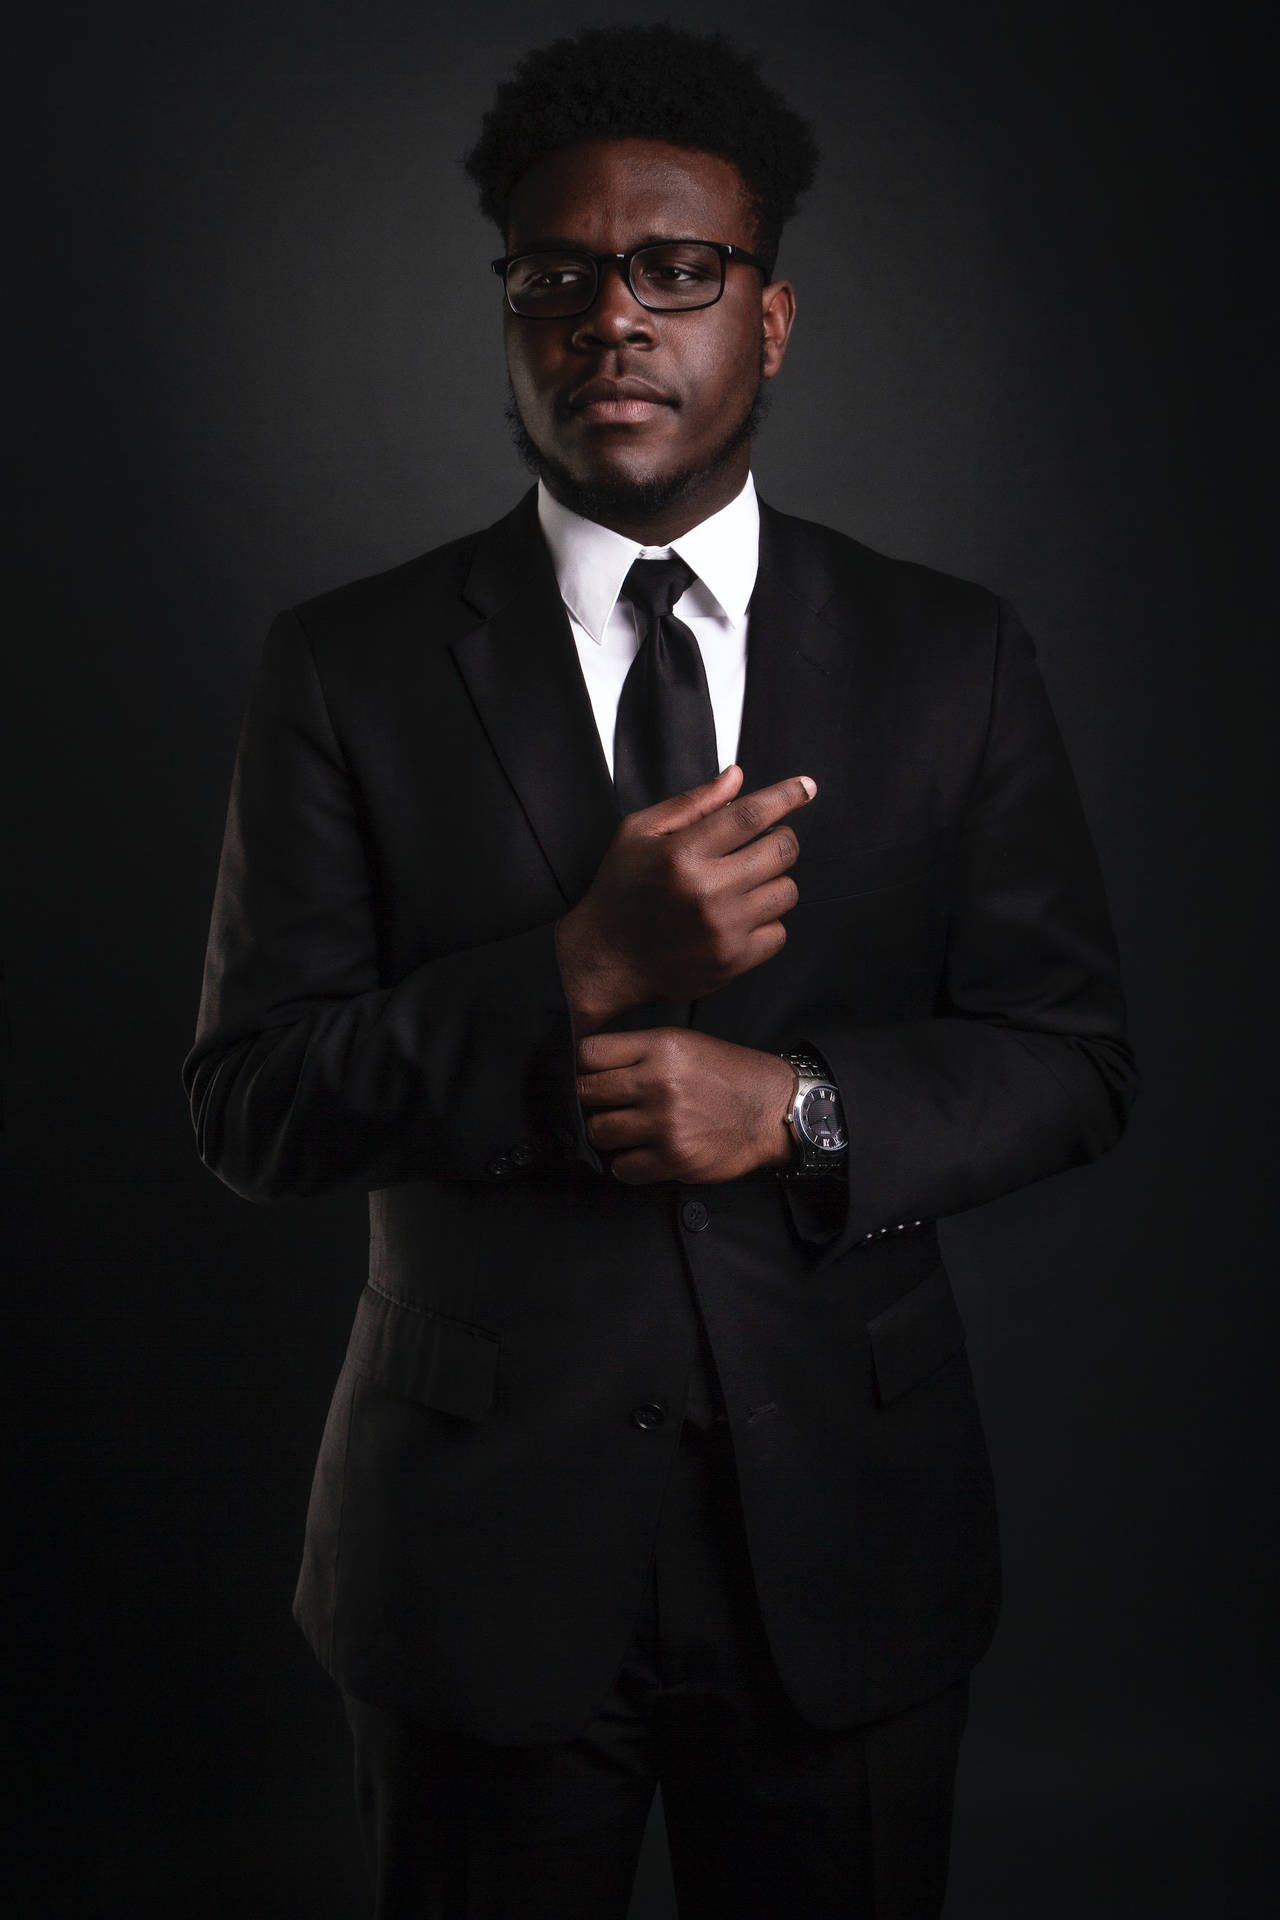 Elegant Shot Of A Black Man In Business Background